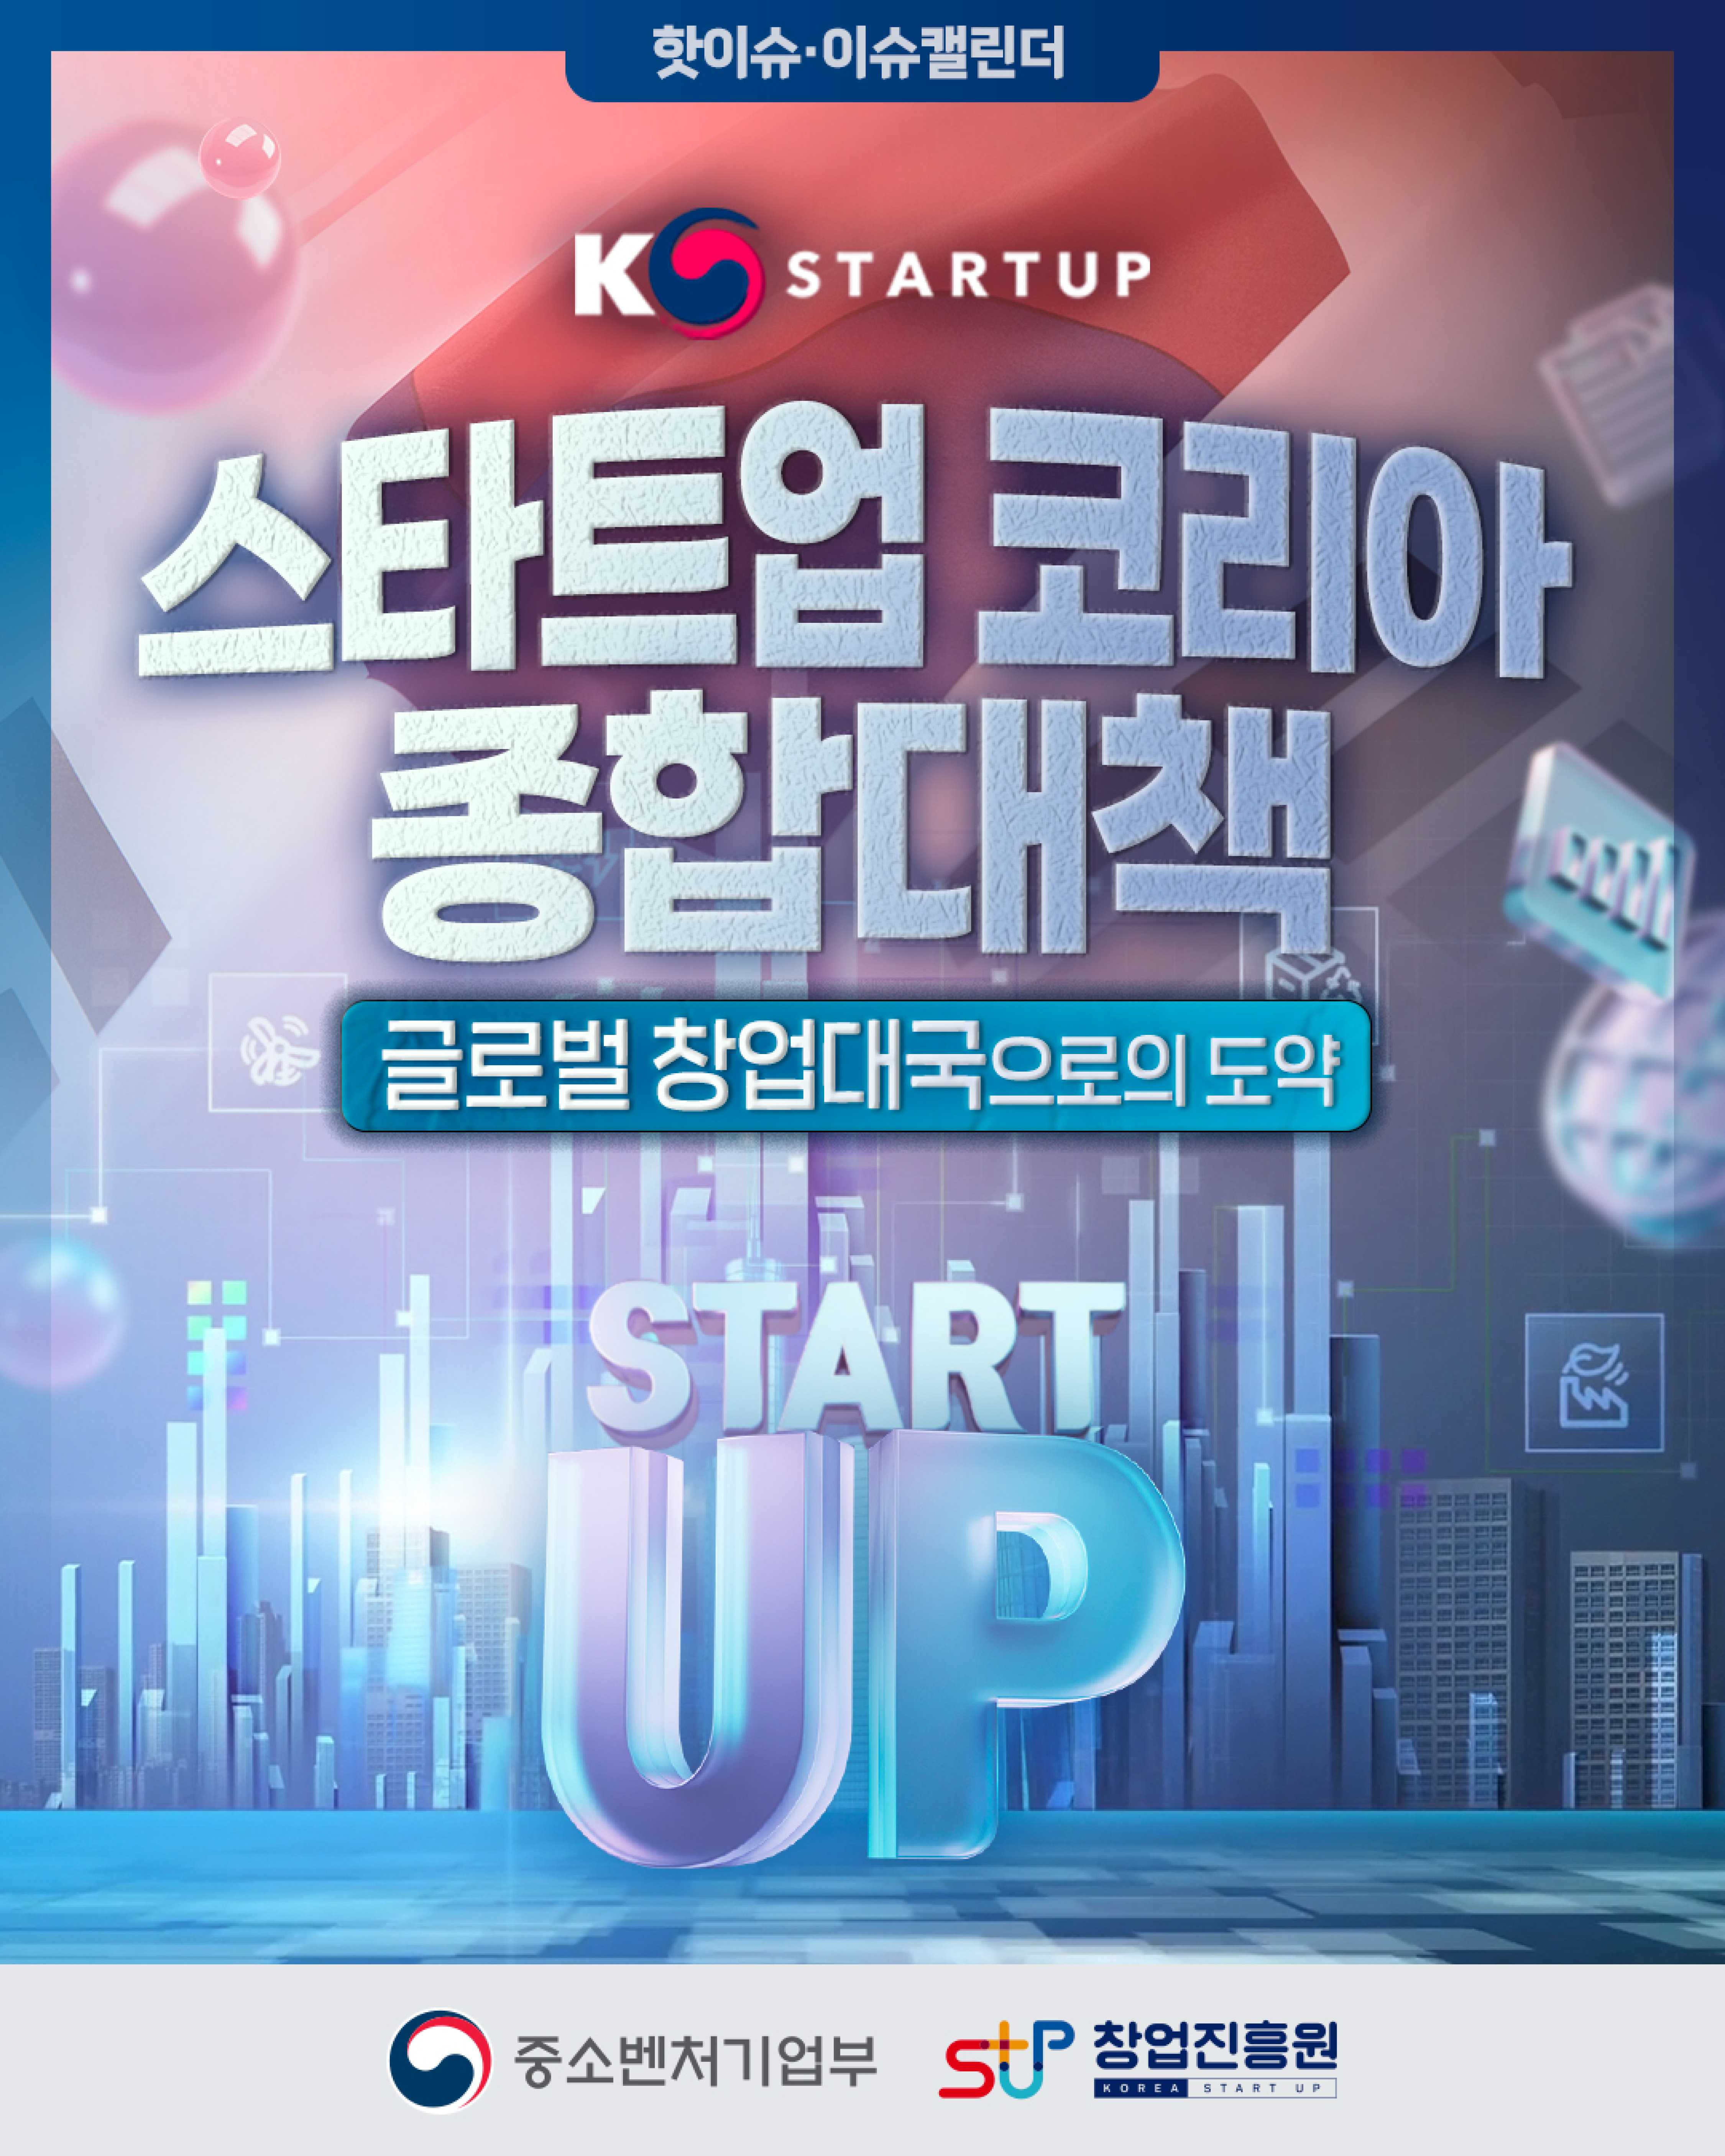 핫이슈.이슈캘린더
K-Startup(로고)
글로벌 창업대국으로의 도약! 스타트업 코리아 종합대책


중소벤처기업부(로고), 창업진흥원(로고)